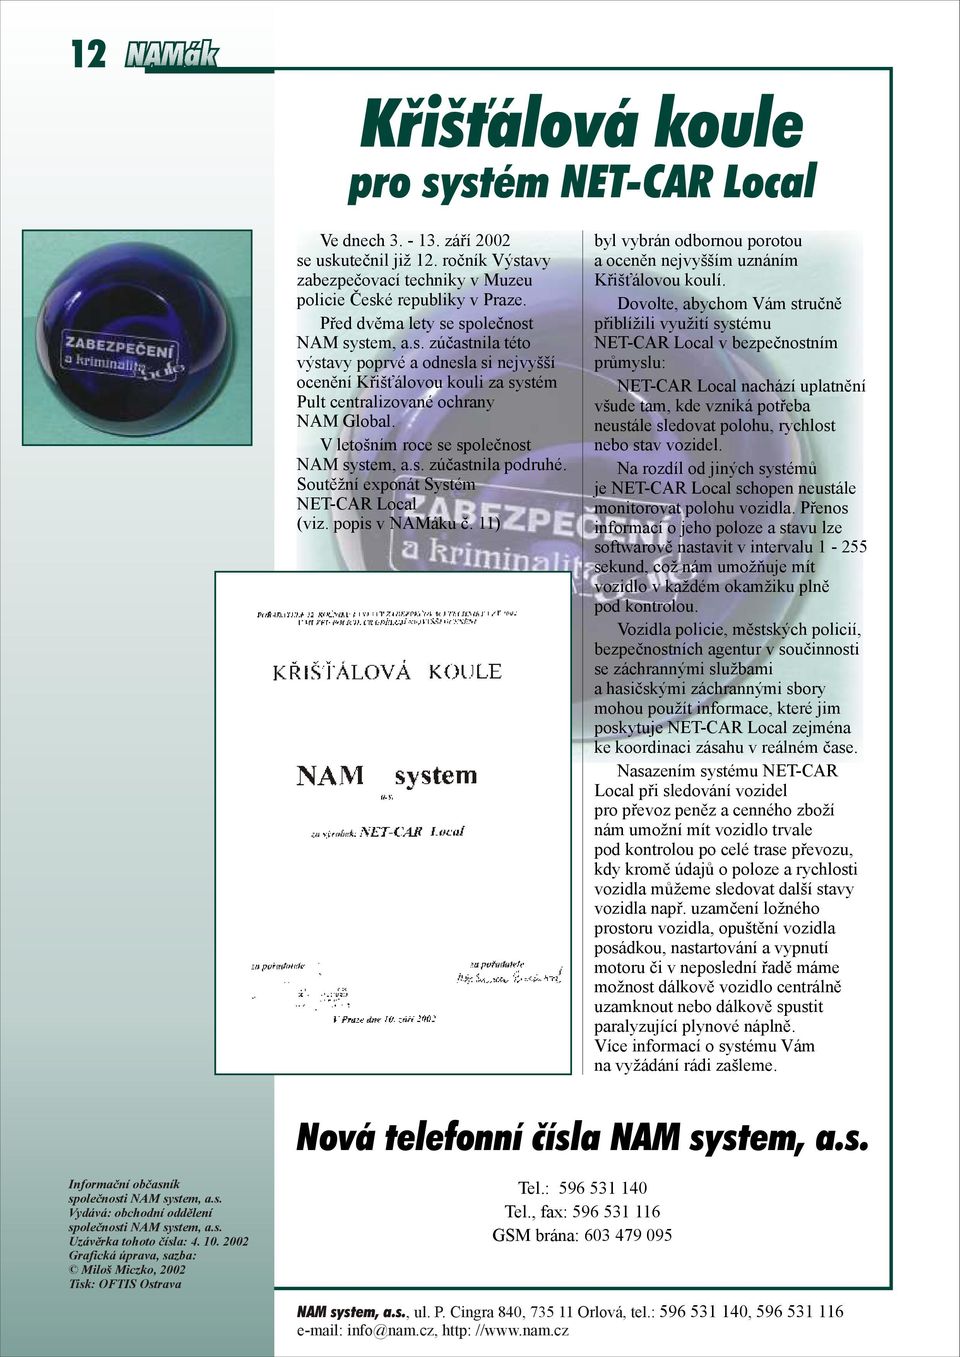 V letošním roce se společnost NAM system, a.s. zúčastnila podruhé. Soutěžní exponát Systém NET-CAR Local (viz. popis v u č.